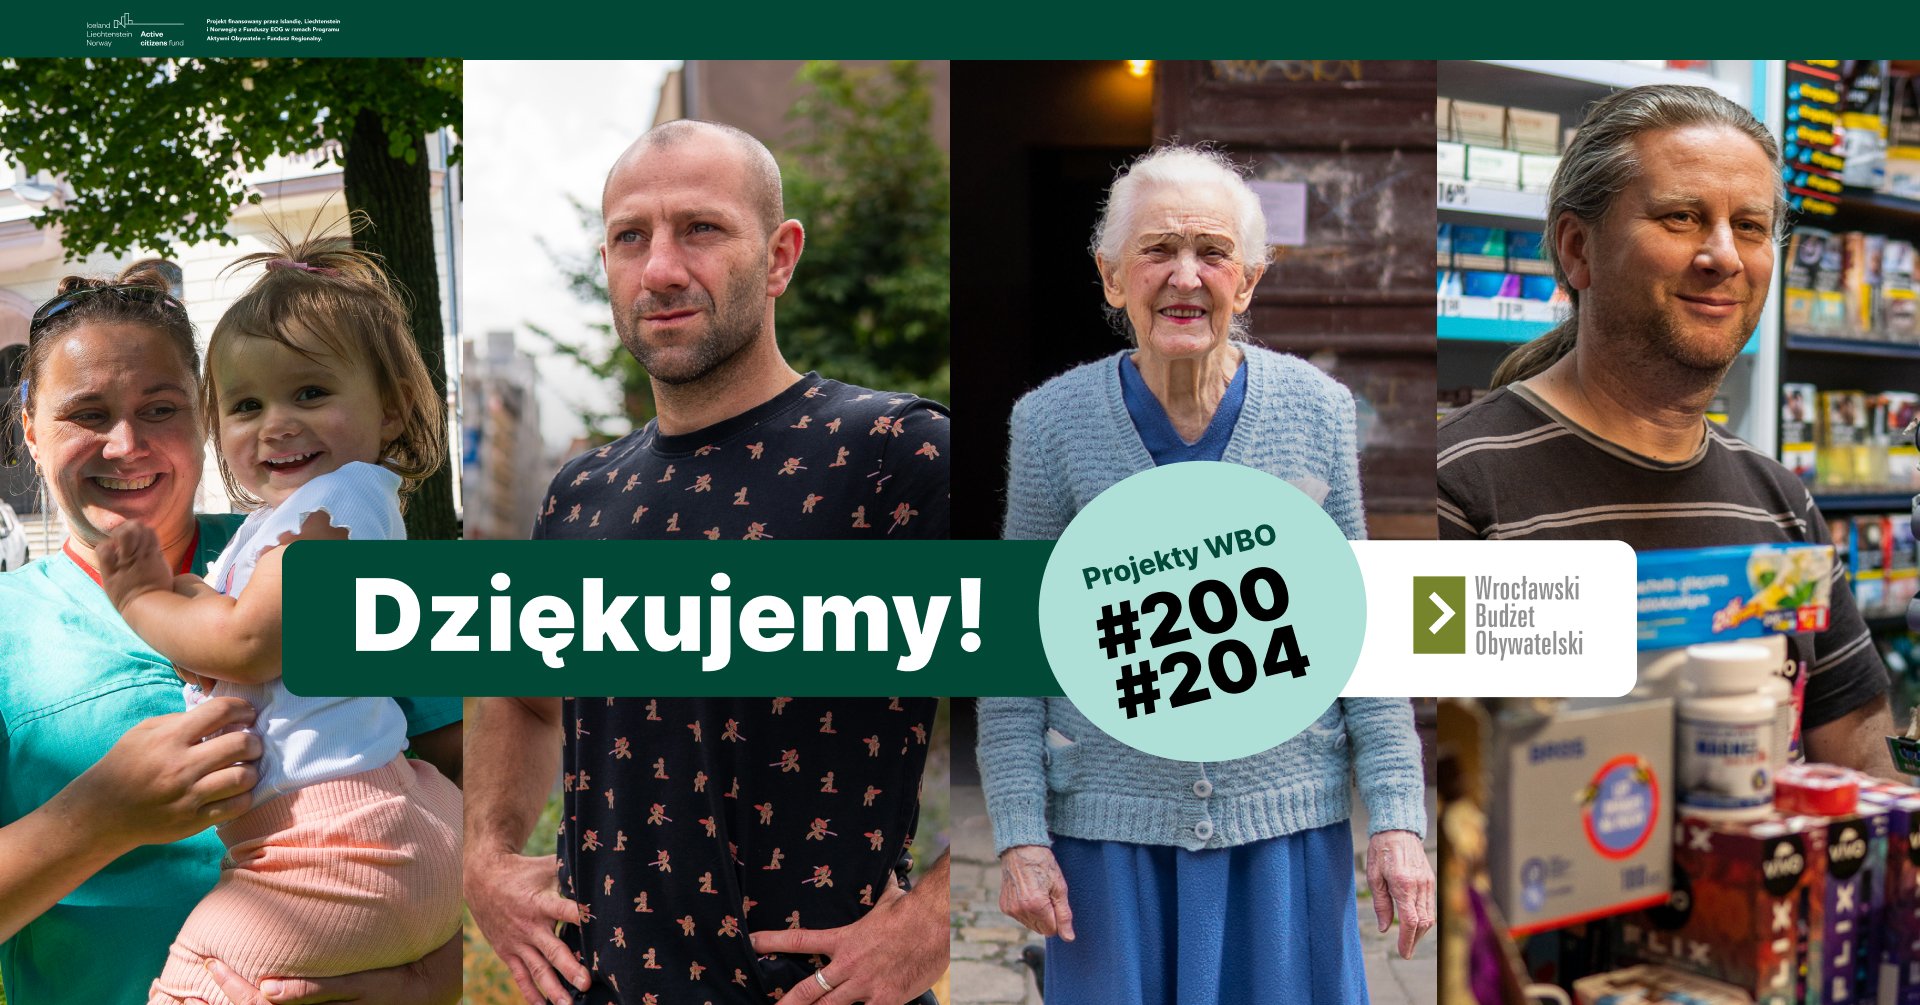 Pozioma grafika złożona z 4 zdjęć. Na zdjęciach od lewej: młoda kobieta trzymająca na rękach kilkuletnie dziecko, młody mężczyzna, starsza kobieta oraz mężczyzna w średnim wieku. Na zdjęcia nałożony tekst: „Dziękujemy! Projekty #200 WBO #204. Wrocławski Budżet Obywatelski”.